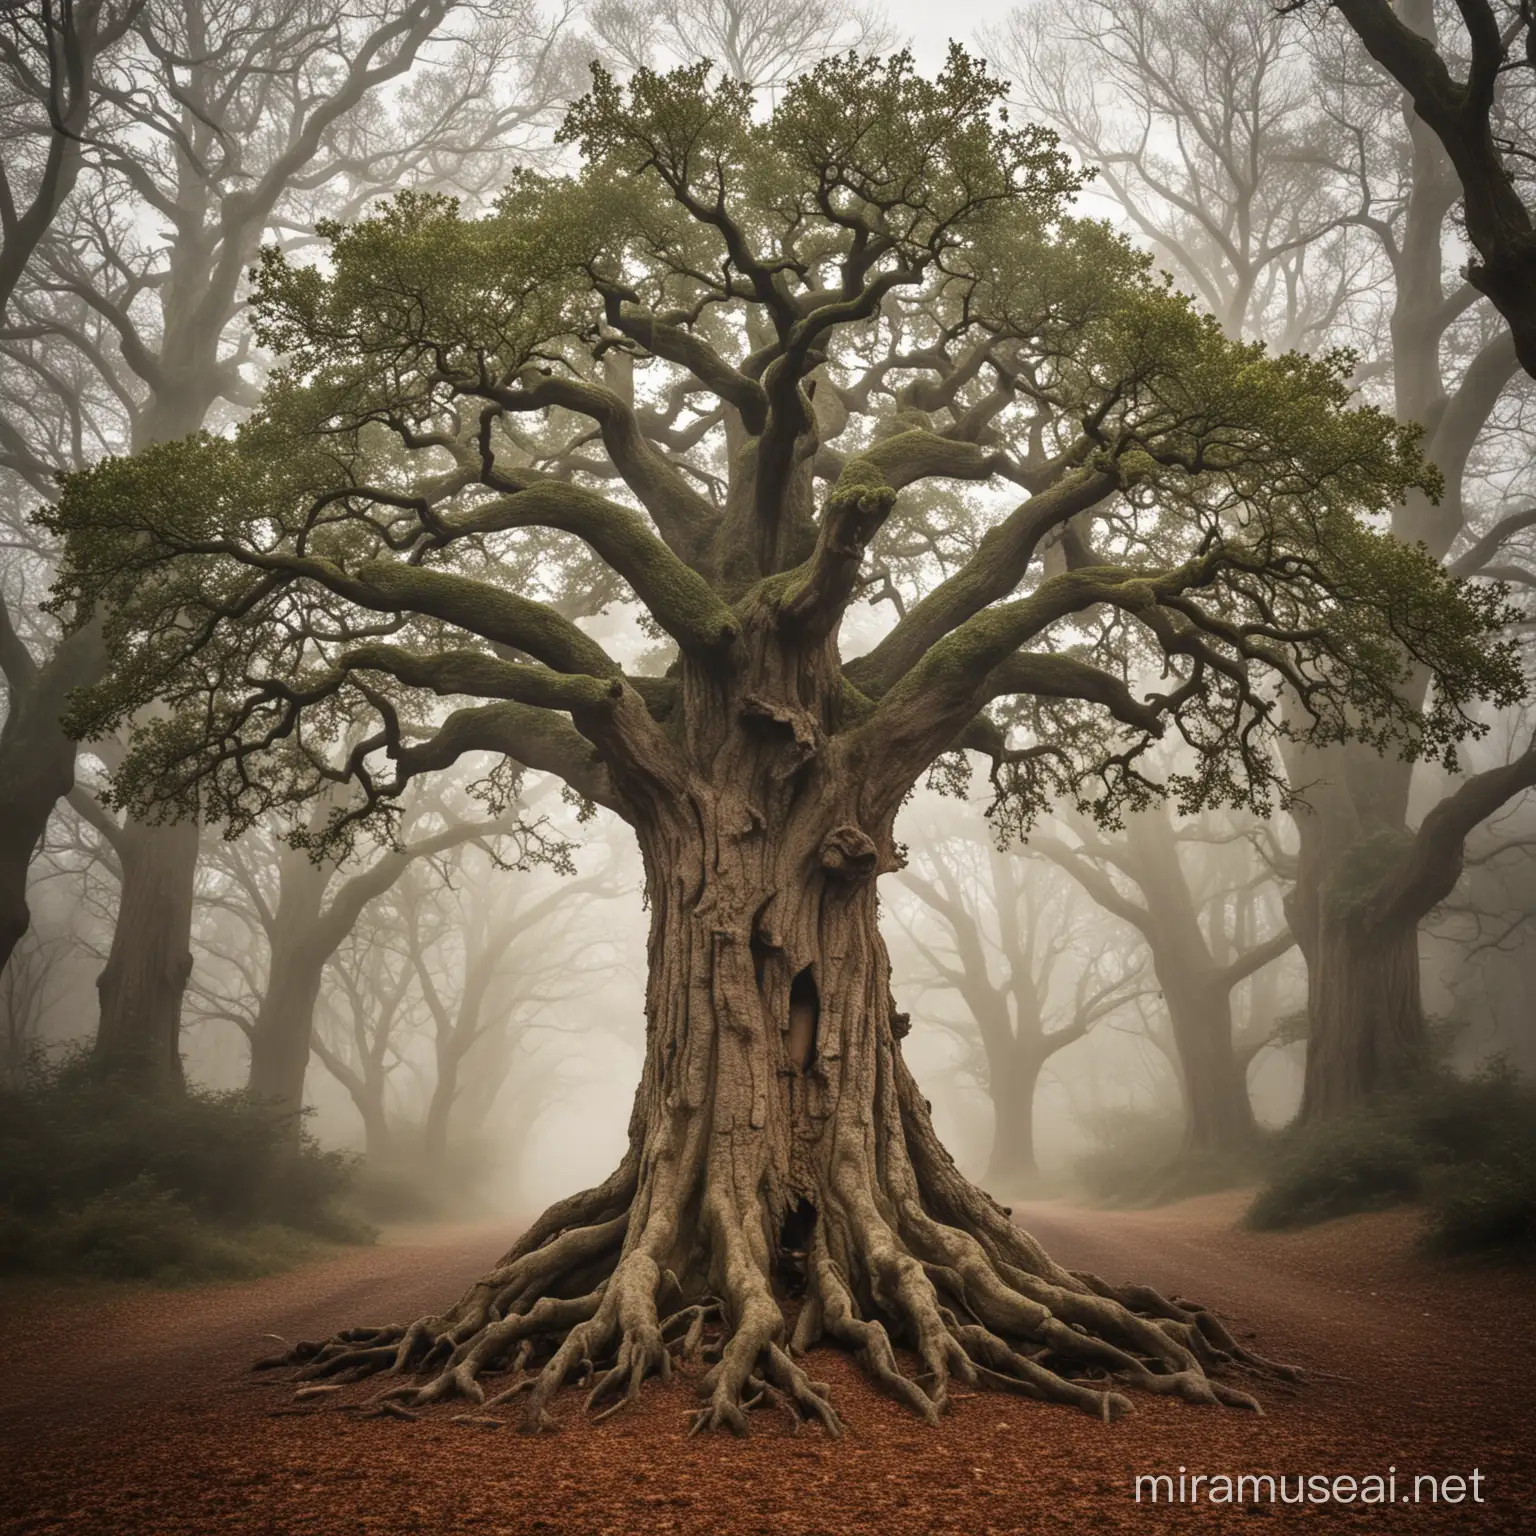 oak tree ent spirit

